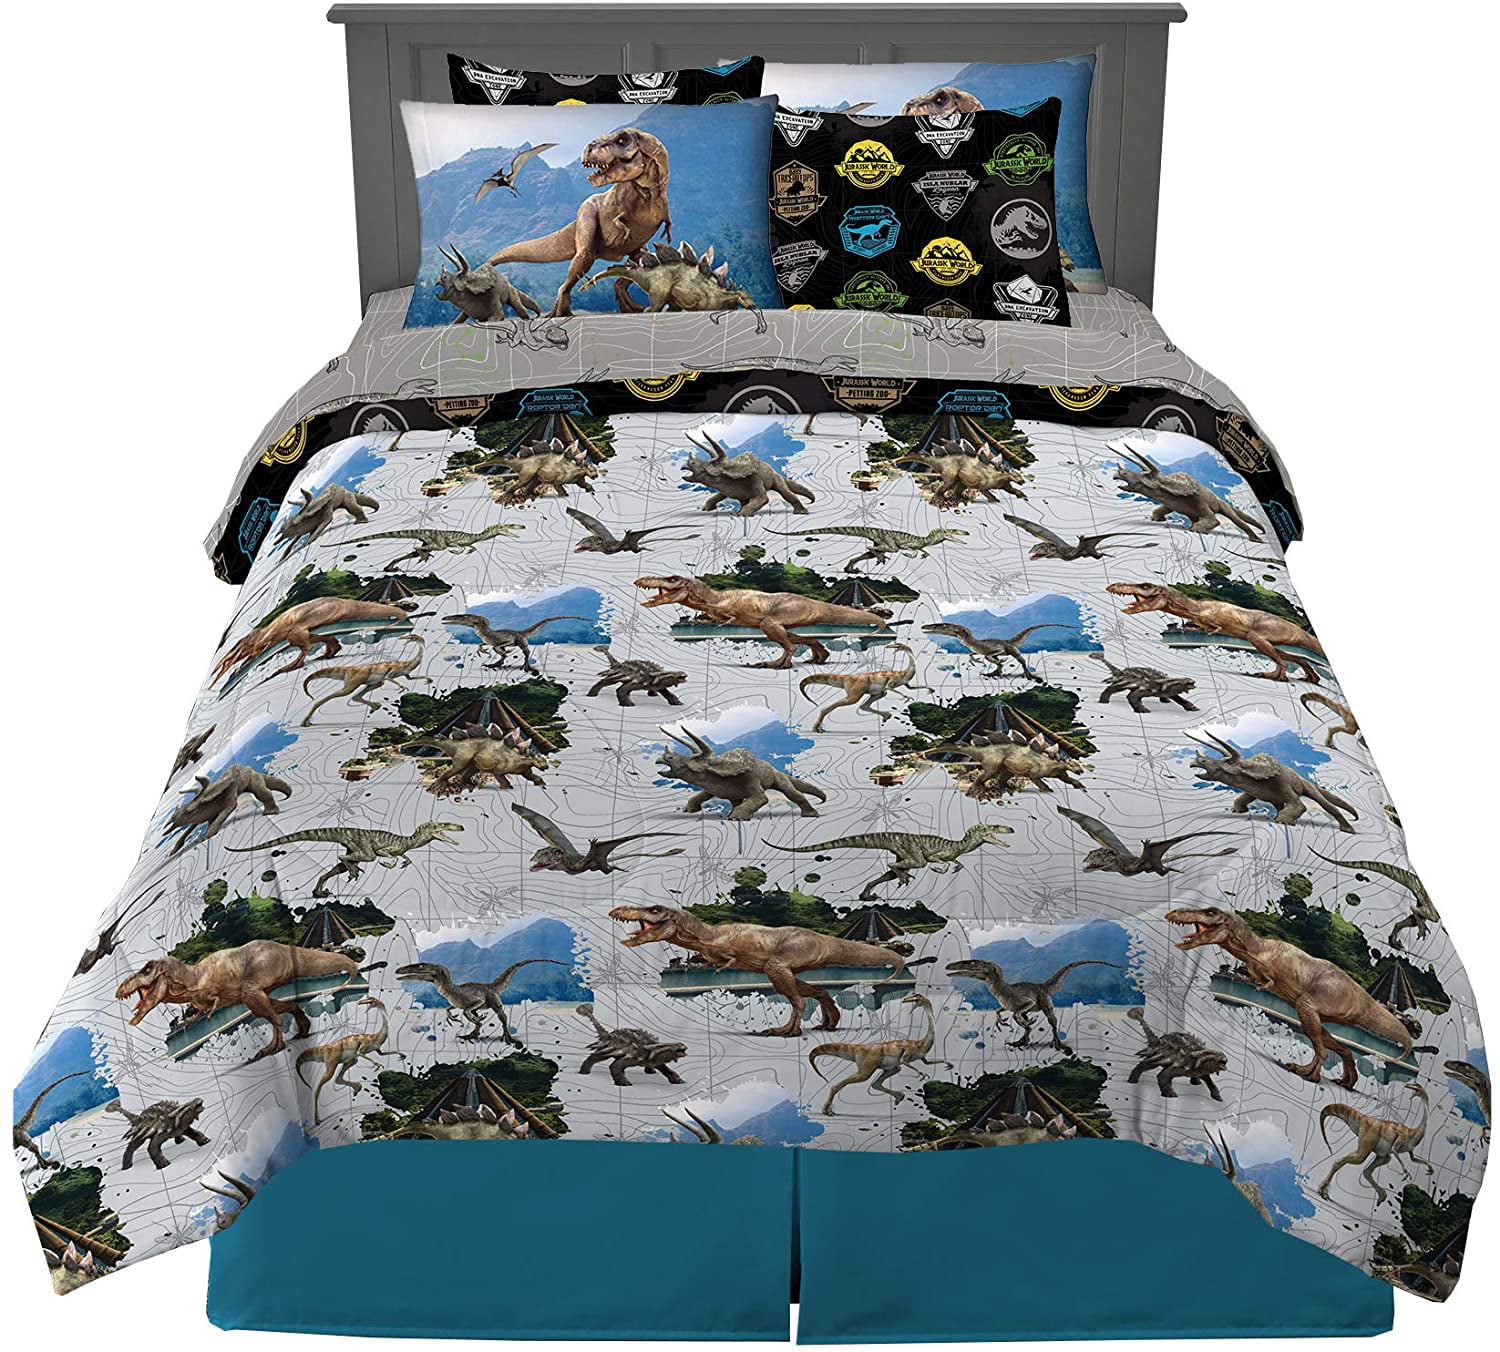 Jurassic World Jungle Single Double Quilt Duvet Cover Kids Dinosaur Bedding New